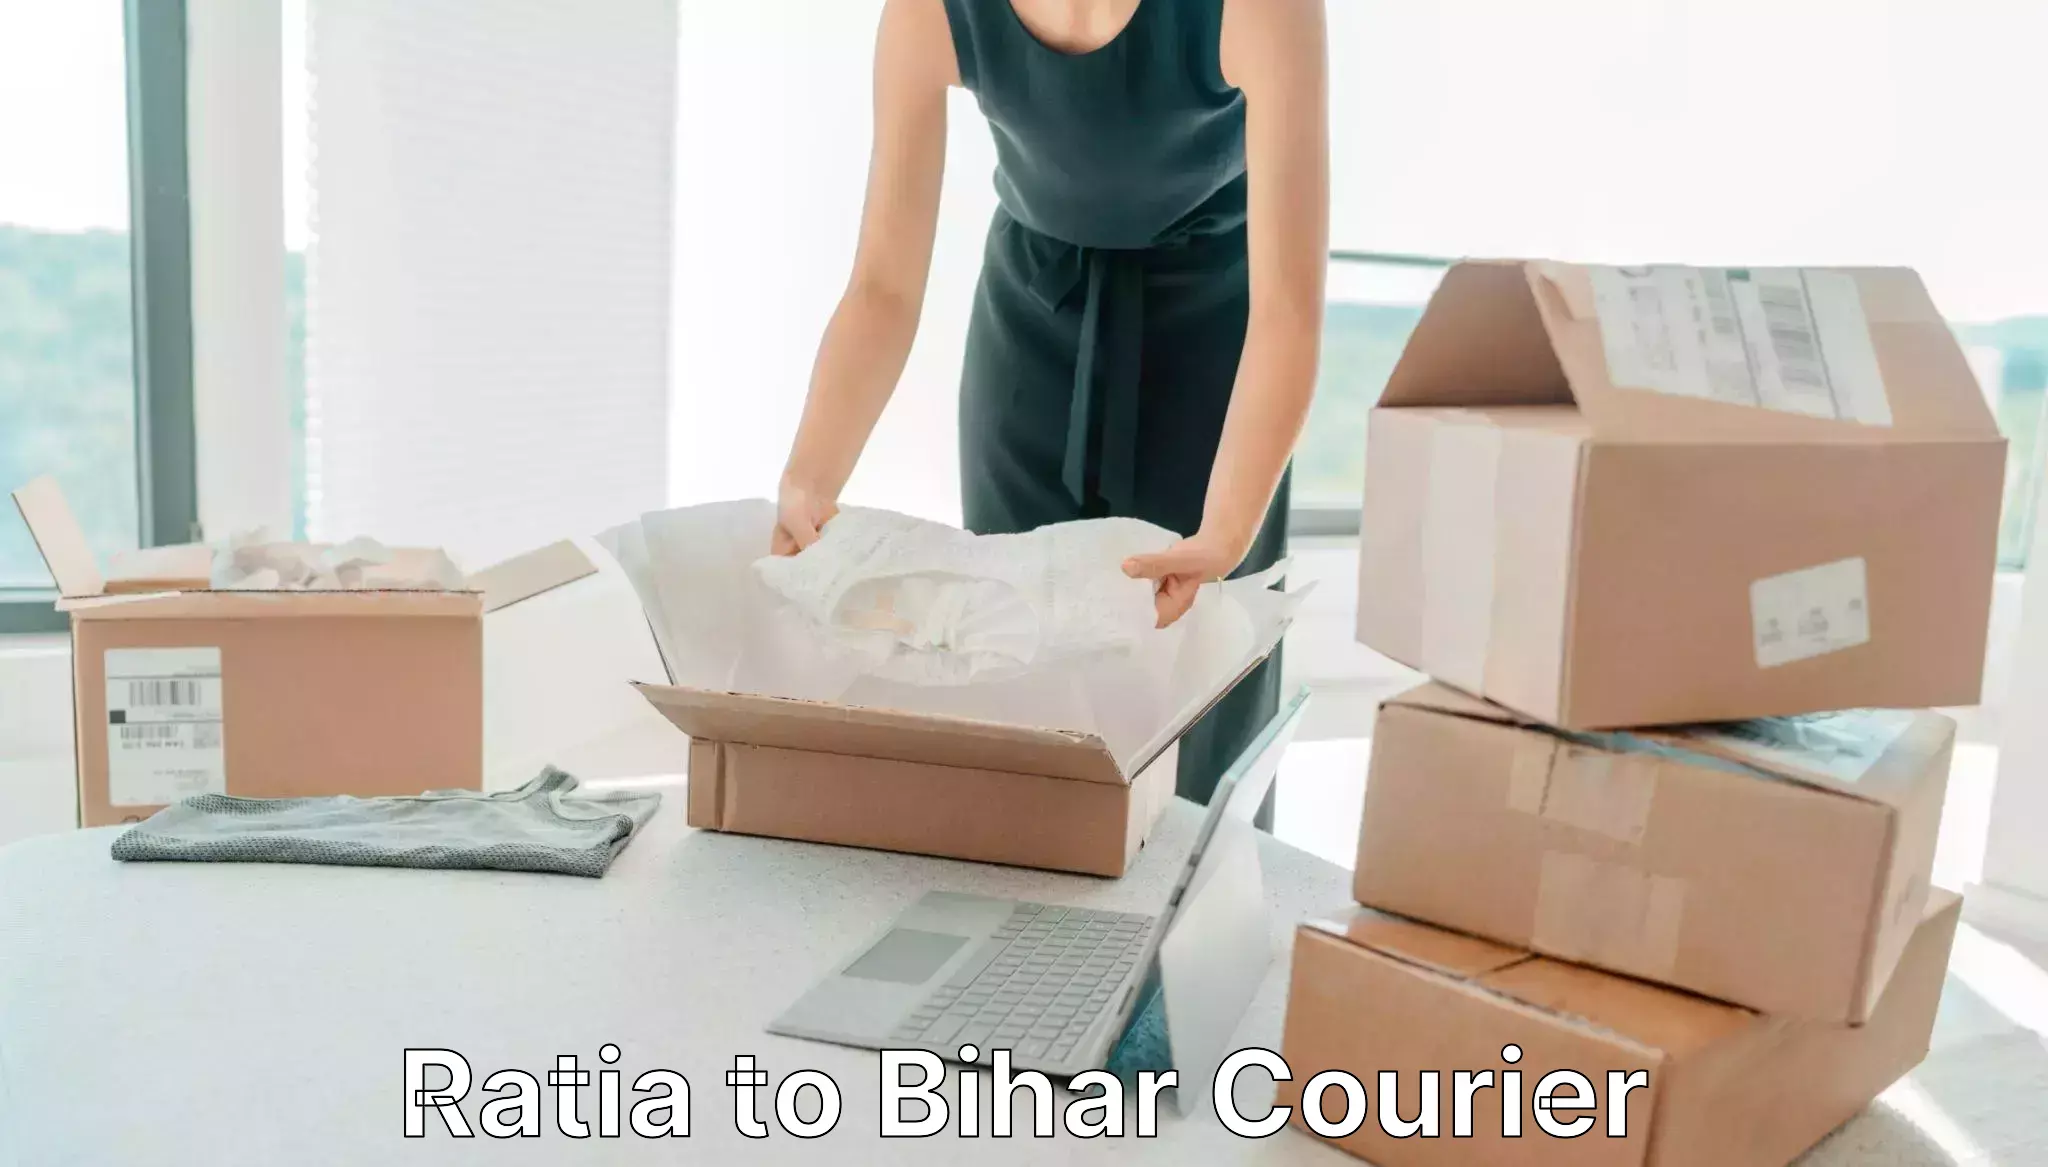 Courier service comparison Ratia to Maheshkhunt